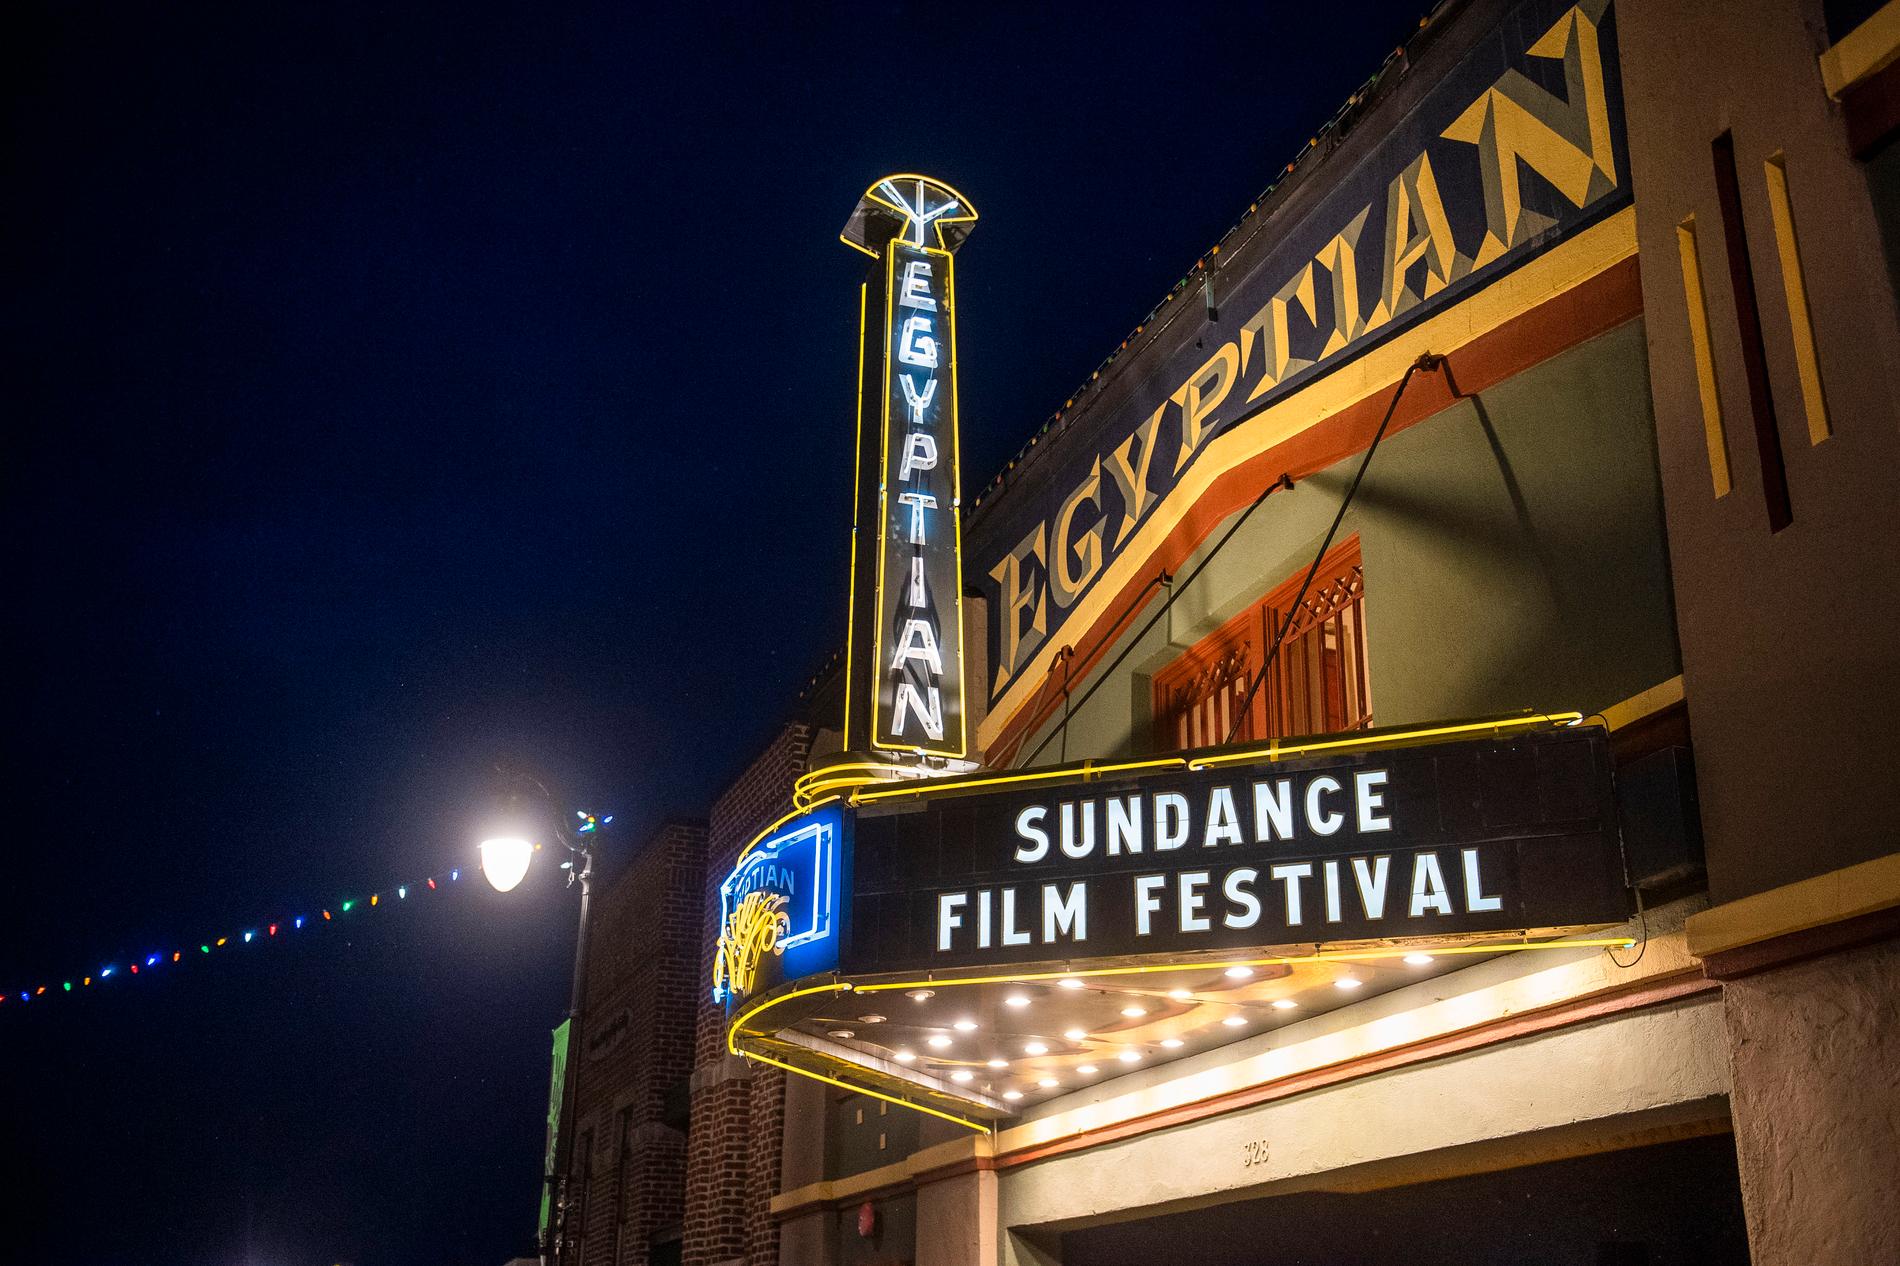 Sundancefestivalen kommer troligtvis att kunna gå av stapeln som planerat i januari 2021 – med vissa coronarestriktioner.